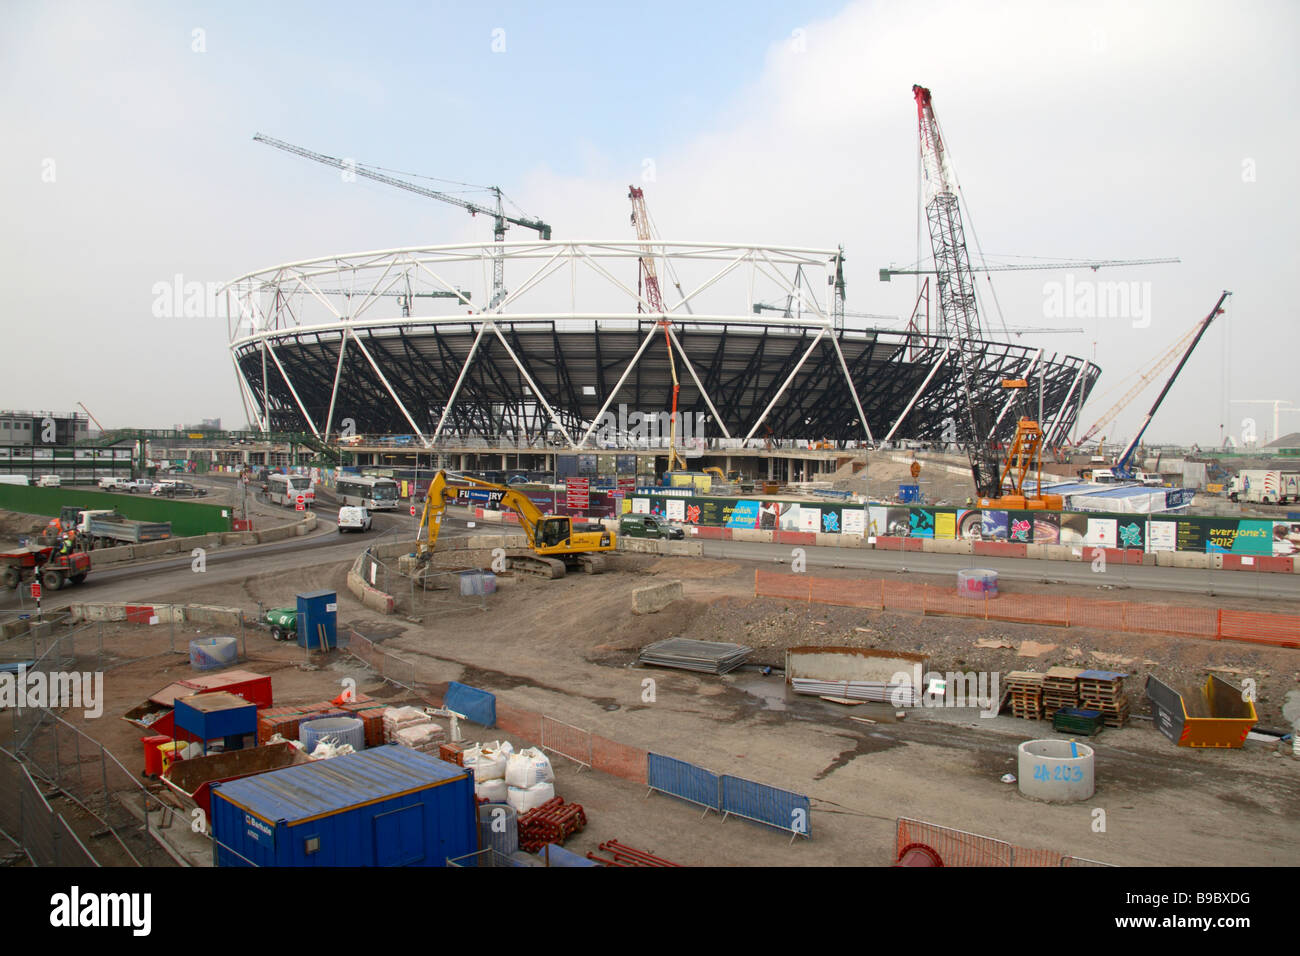 Die Olympischen Spiele in London 2012 Stadion Baustelle in der Nähe von Stratford, London.  März 2009 Stockfoto